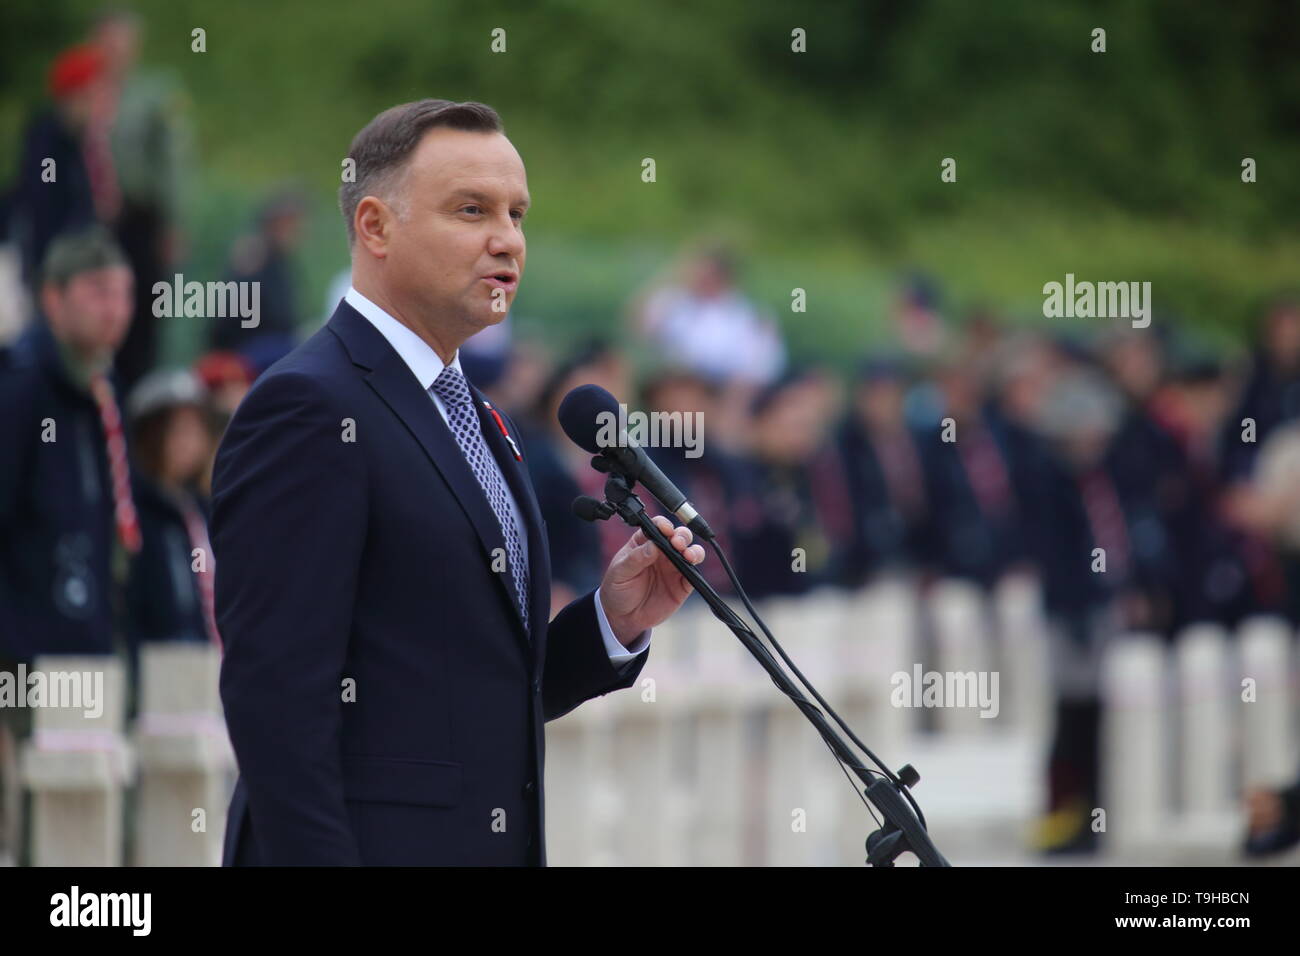 Cassino, Italie - 18 mai 2019 : Le discours du président de la République de Pologne Andrzej Duda dans le cimetière militaire polonais pour le 75e anniversaire de la bataille de Montecassino Banque D'Images